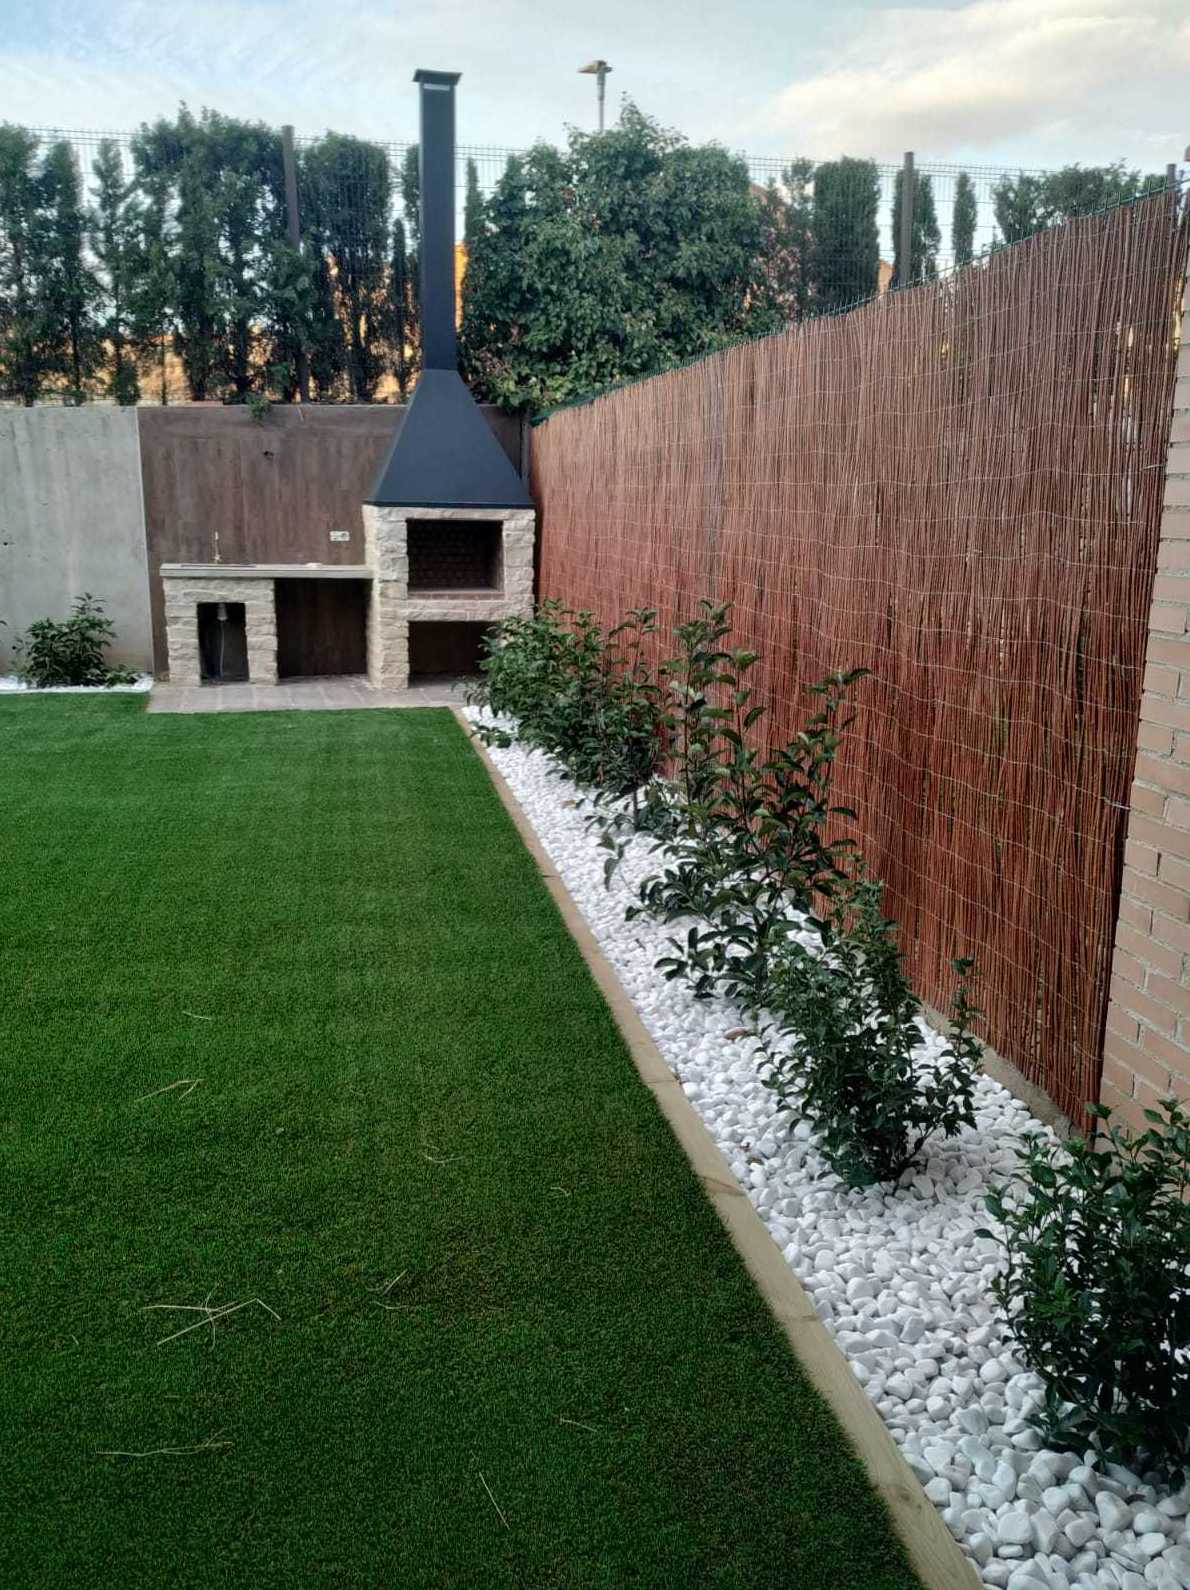 Foto 5 de Diseño y mantenimiento de jardines en Híjar | Jardinería Sancho